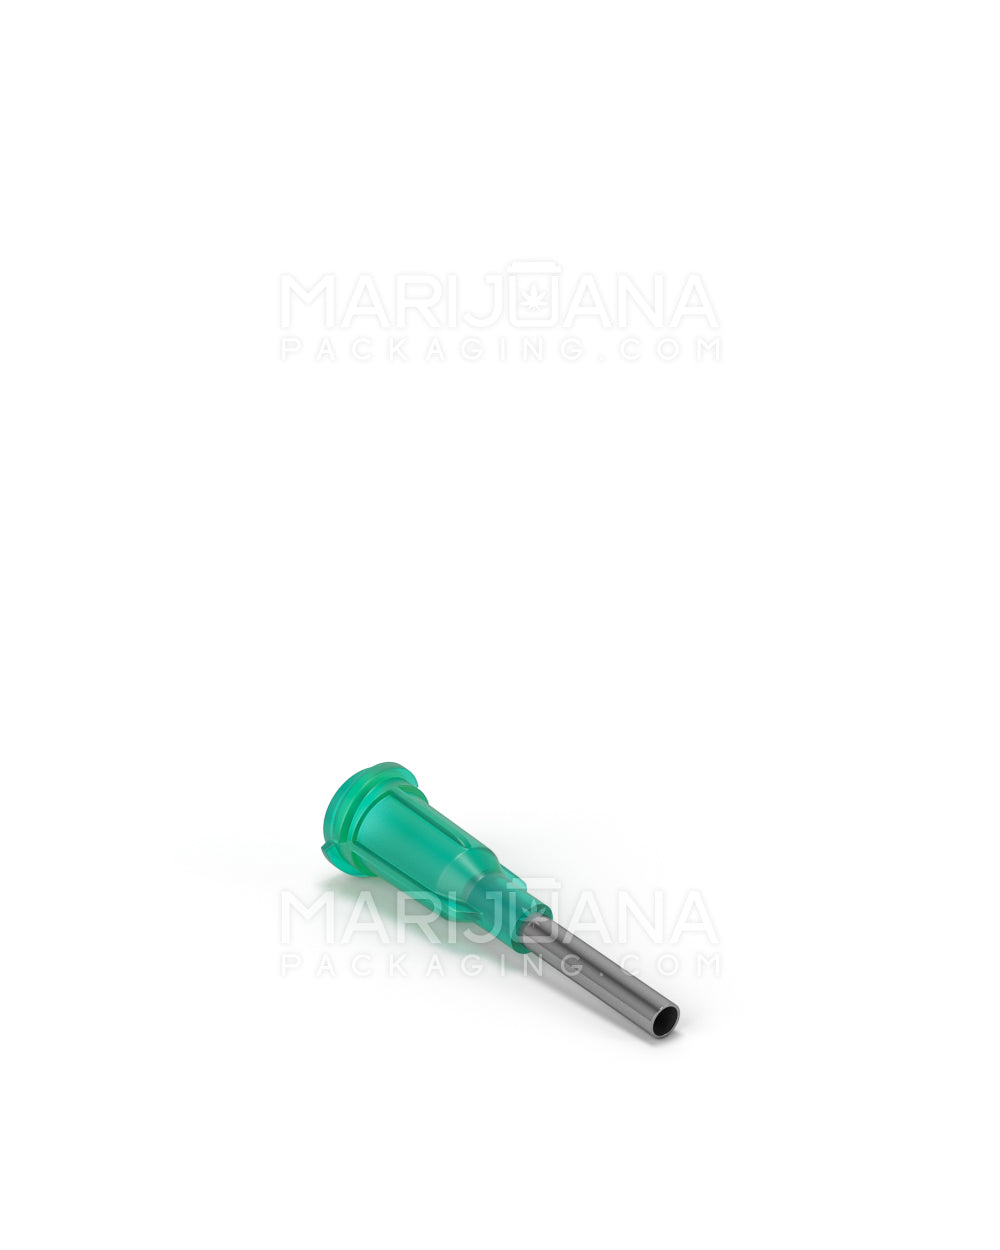 Green Replacement Needles | 0.5in - 14 Gauge - 15 Count - 3